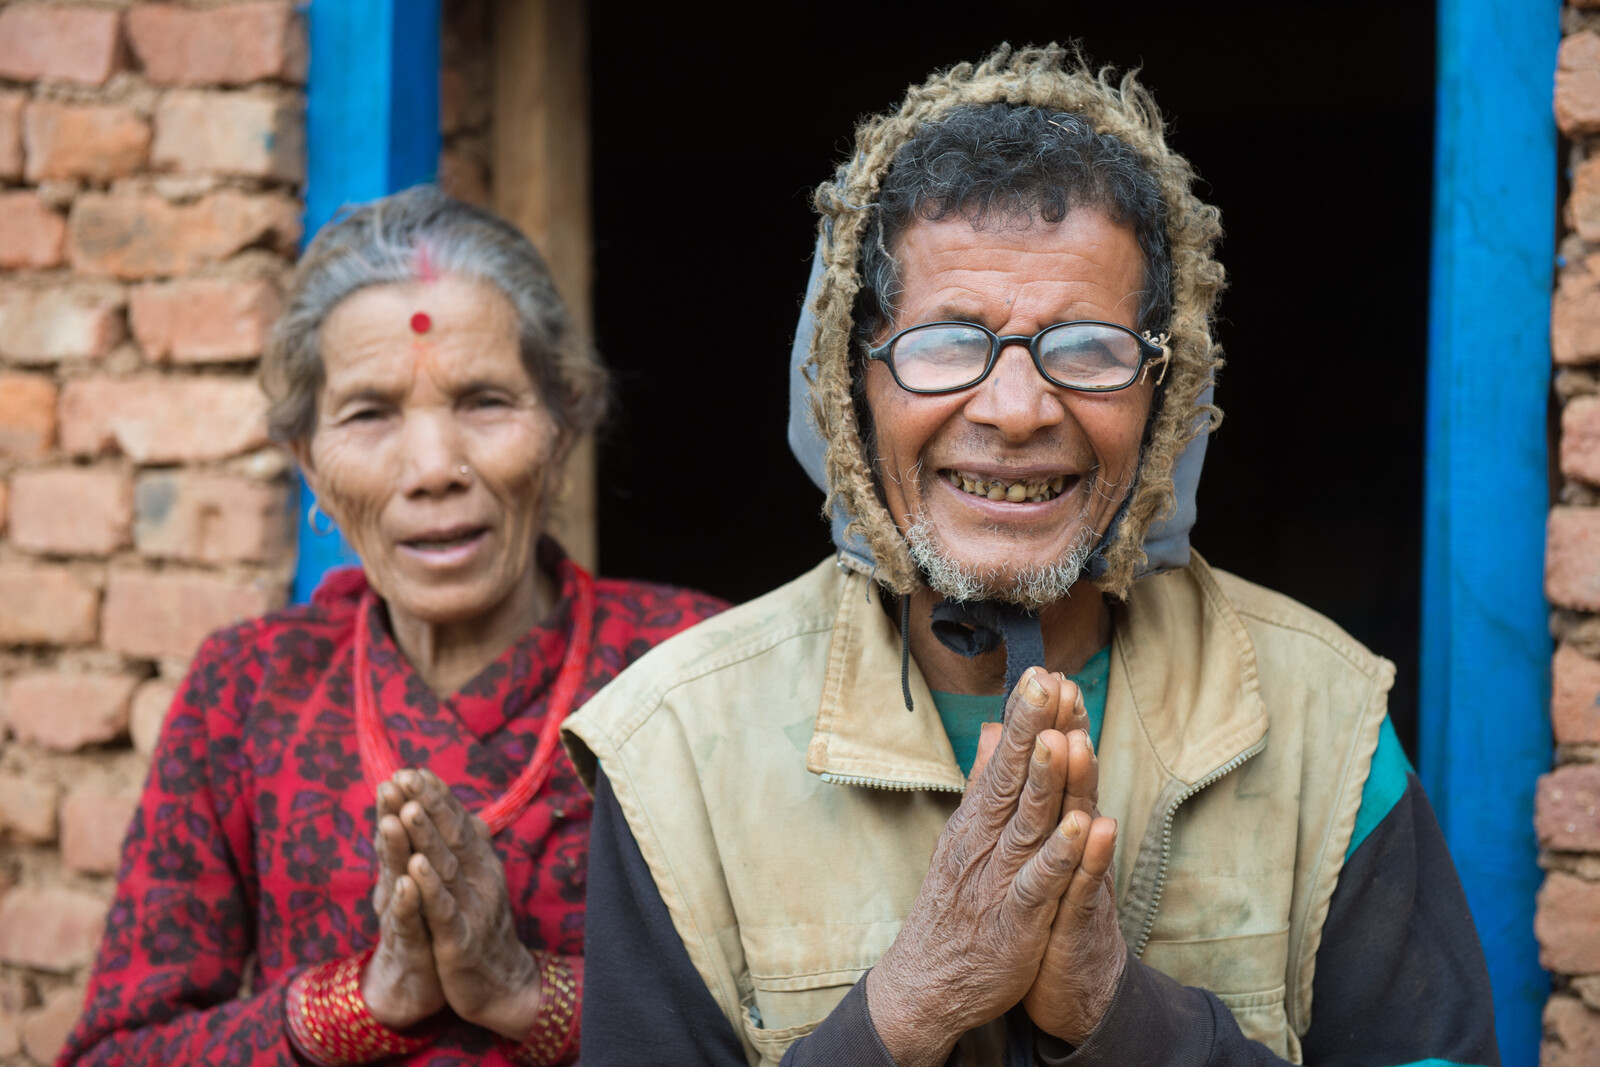 Ein Jahr nach dem Erdbeben in Nepal bedankt sich ein älteres Ehepaar für die Hilfe der Organisationen.